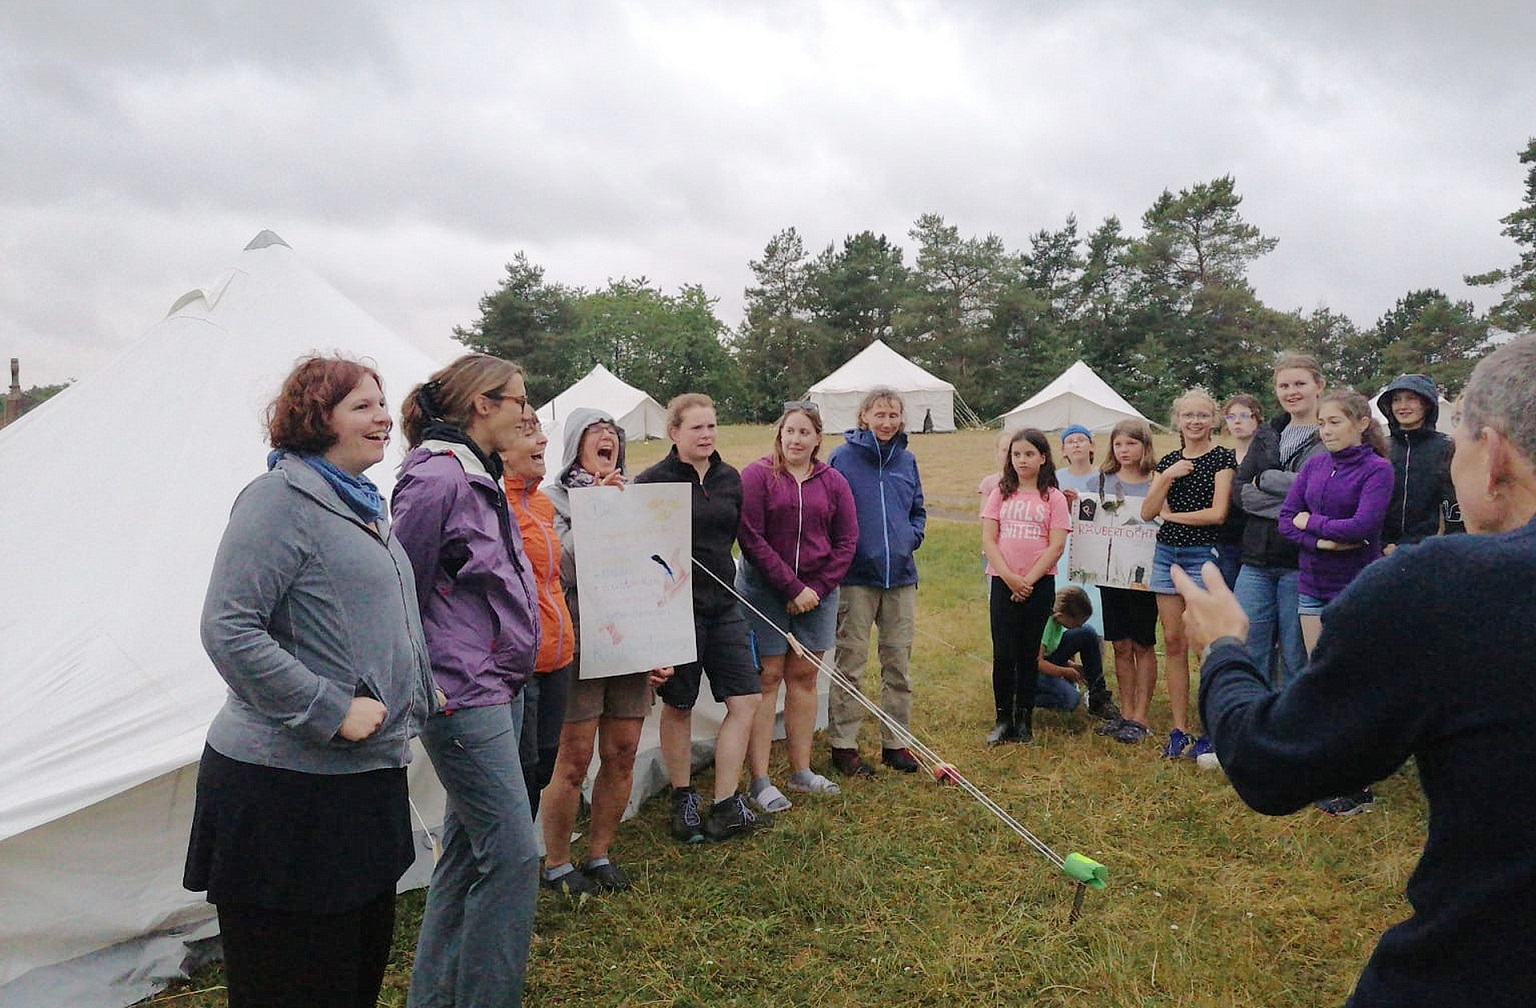 Die Gruppen gaben sich und ihren Zelten Namen, die dem Lagermotto „Räuber“ entsprachen. Bei einem gemeinsamen Rundgang durchs Camp stellten sich die Gruppen gegenseitig vor. (c) Foto: Manfred Lang/pp/Agentur ProfiPress